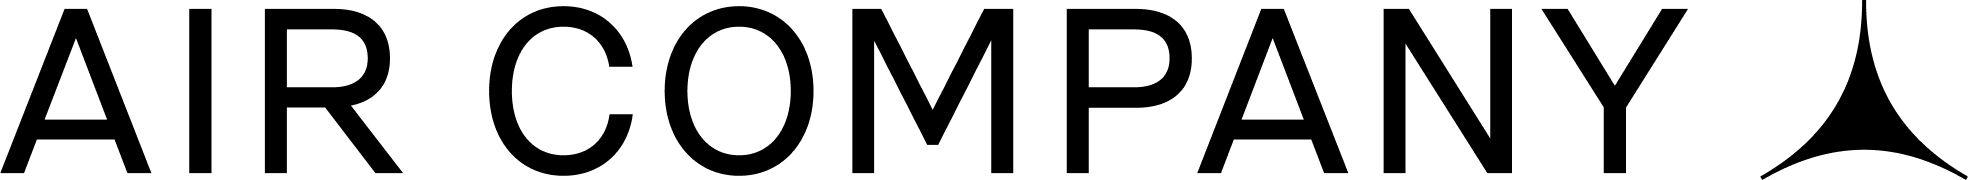 AIR Logo Full Black.png